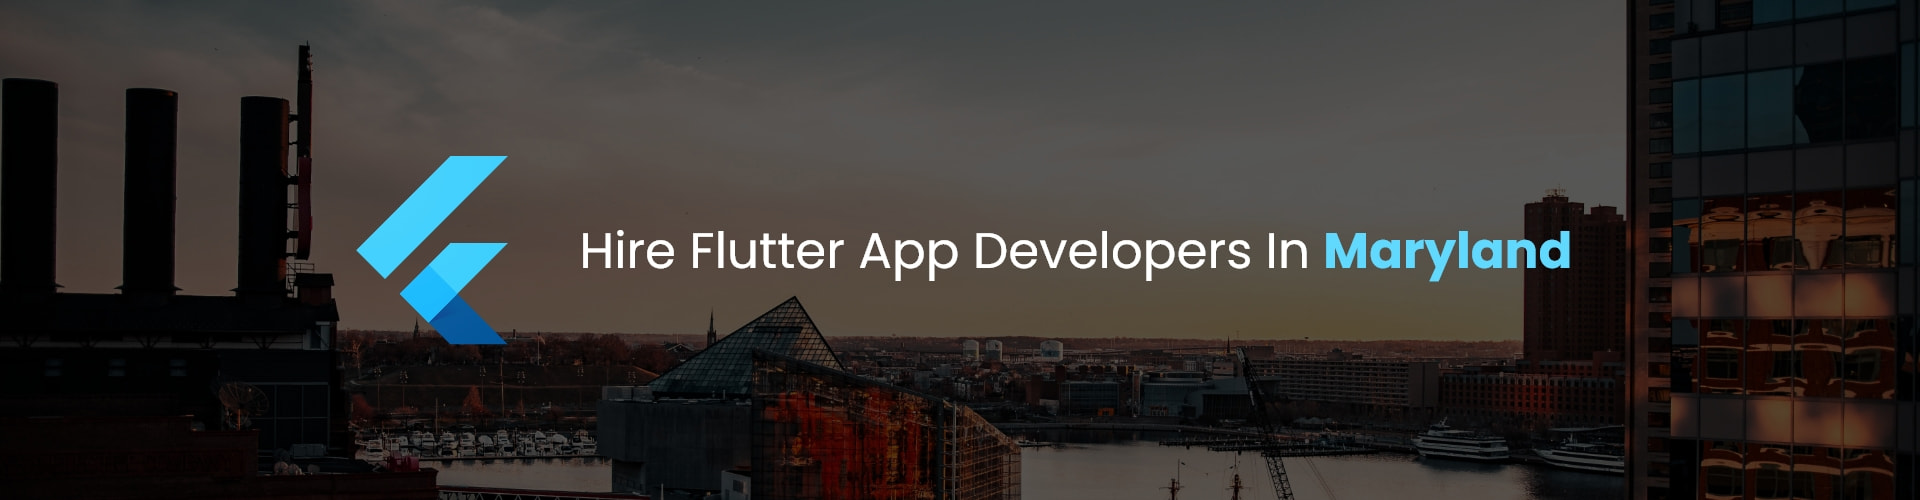 flutter app developers in maryland